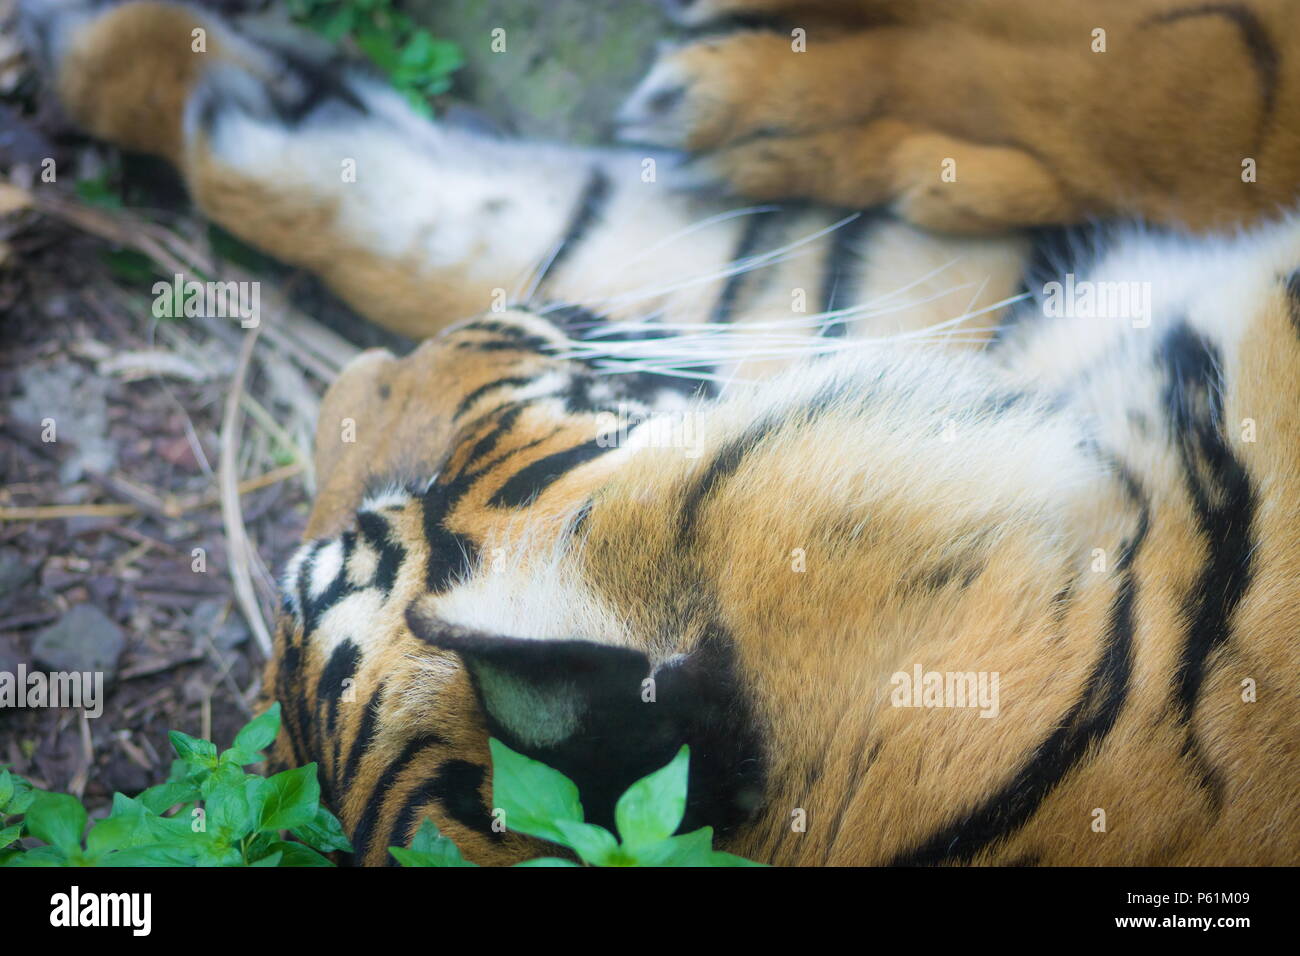 El tigre de Sumatra (Panthera tigris sondaica) es un tigre de la población que vive en la isla indonesia de Sumatra y está en peligro crítico de extinción. Foto de stock